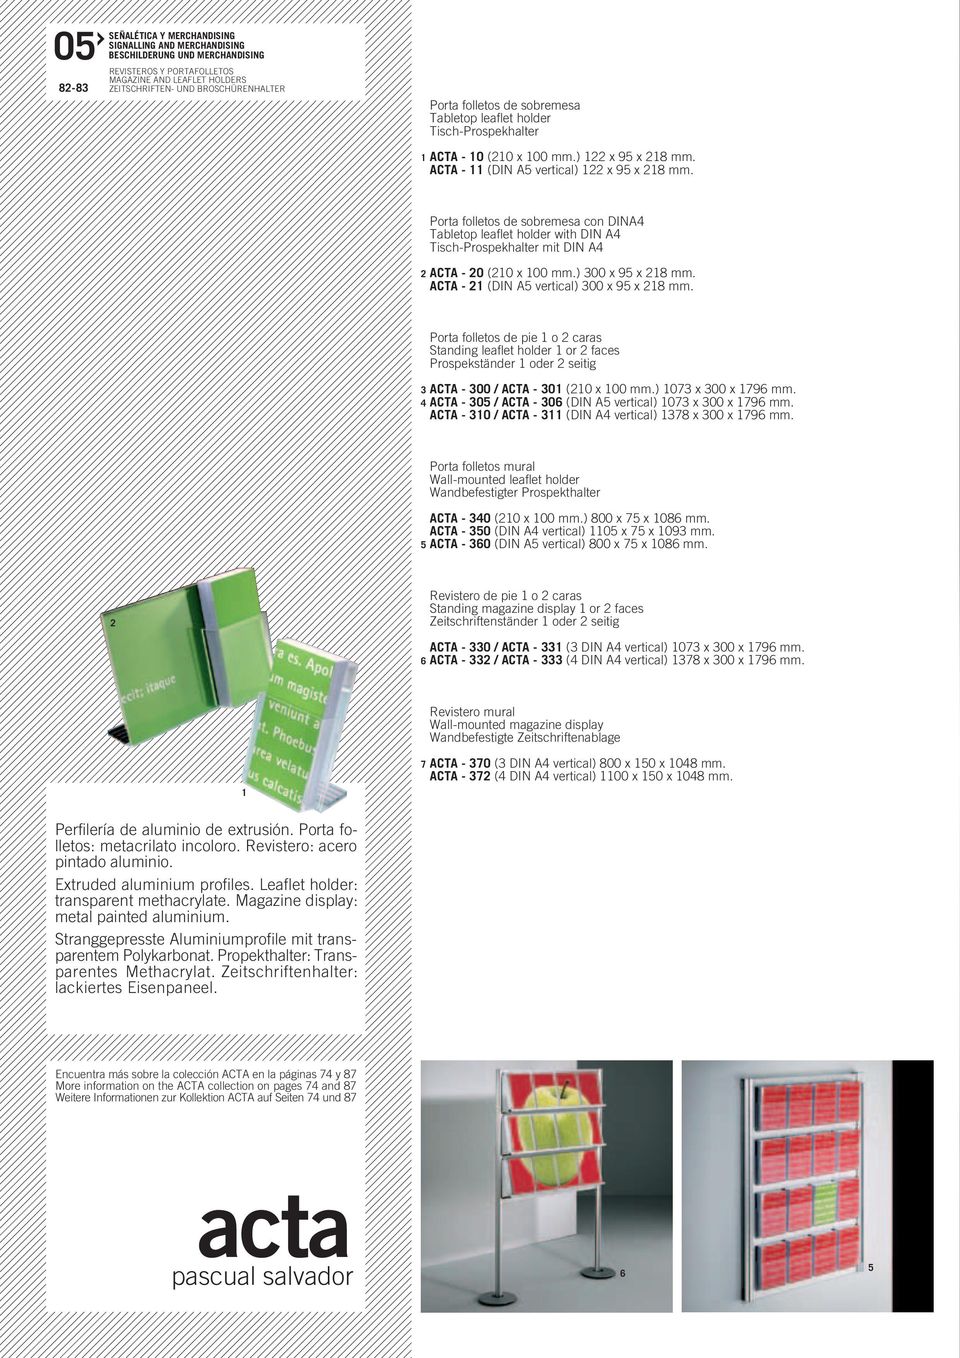 Porta folletos de sobremesa con DINA4 Tabletop leaflet holder with DIN A4 Tisch-Prospekhalter mit DIN A4 2 ACTA - 20 (20 x 00 mm.) 300 x 95 x 28 mm. ACTA - 2 (DIN A5 vertical) 300 x 95 x 28 mm.